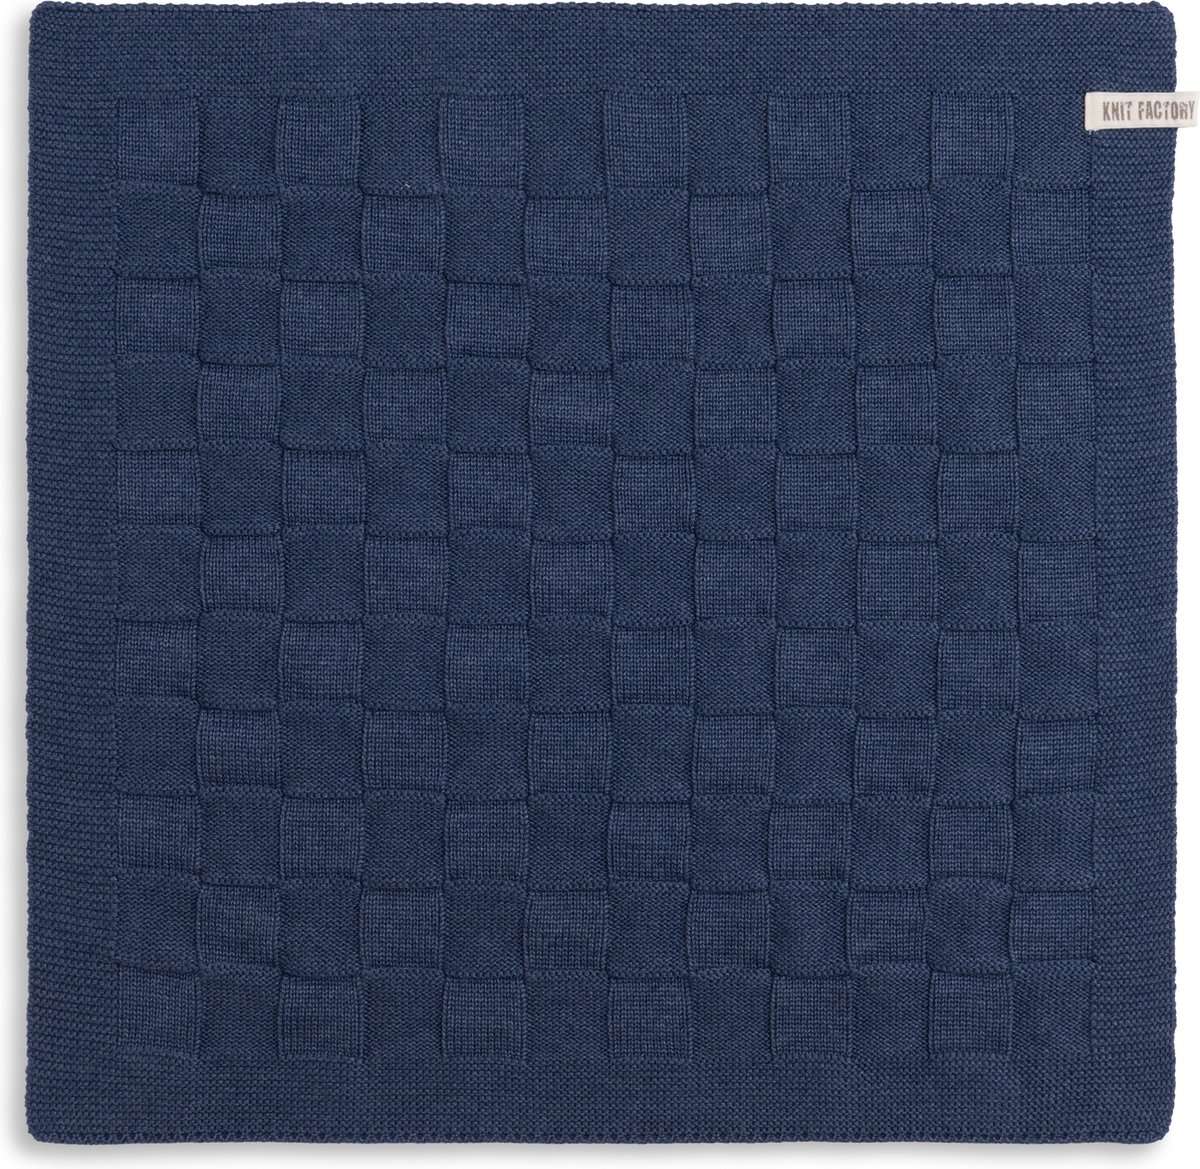 Knit Factory Gebreide Keukendoek - Keukenhanddoek Uni - Handdoek - Vaatdoek - Keuken doek - Jeans - 50x50 cm